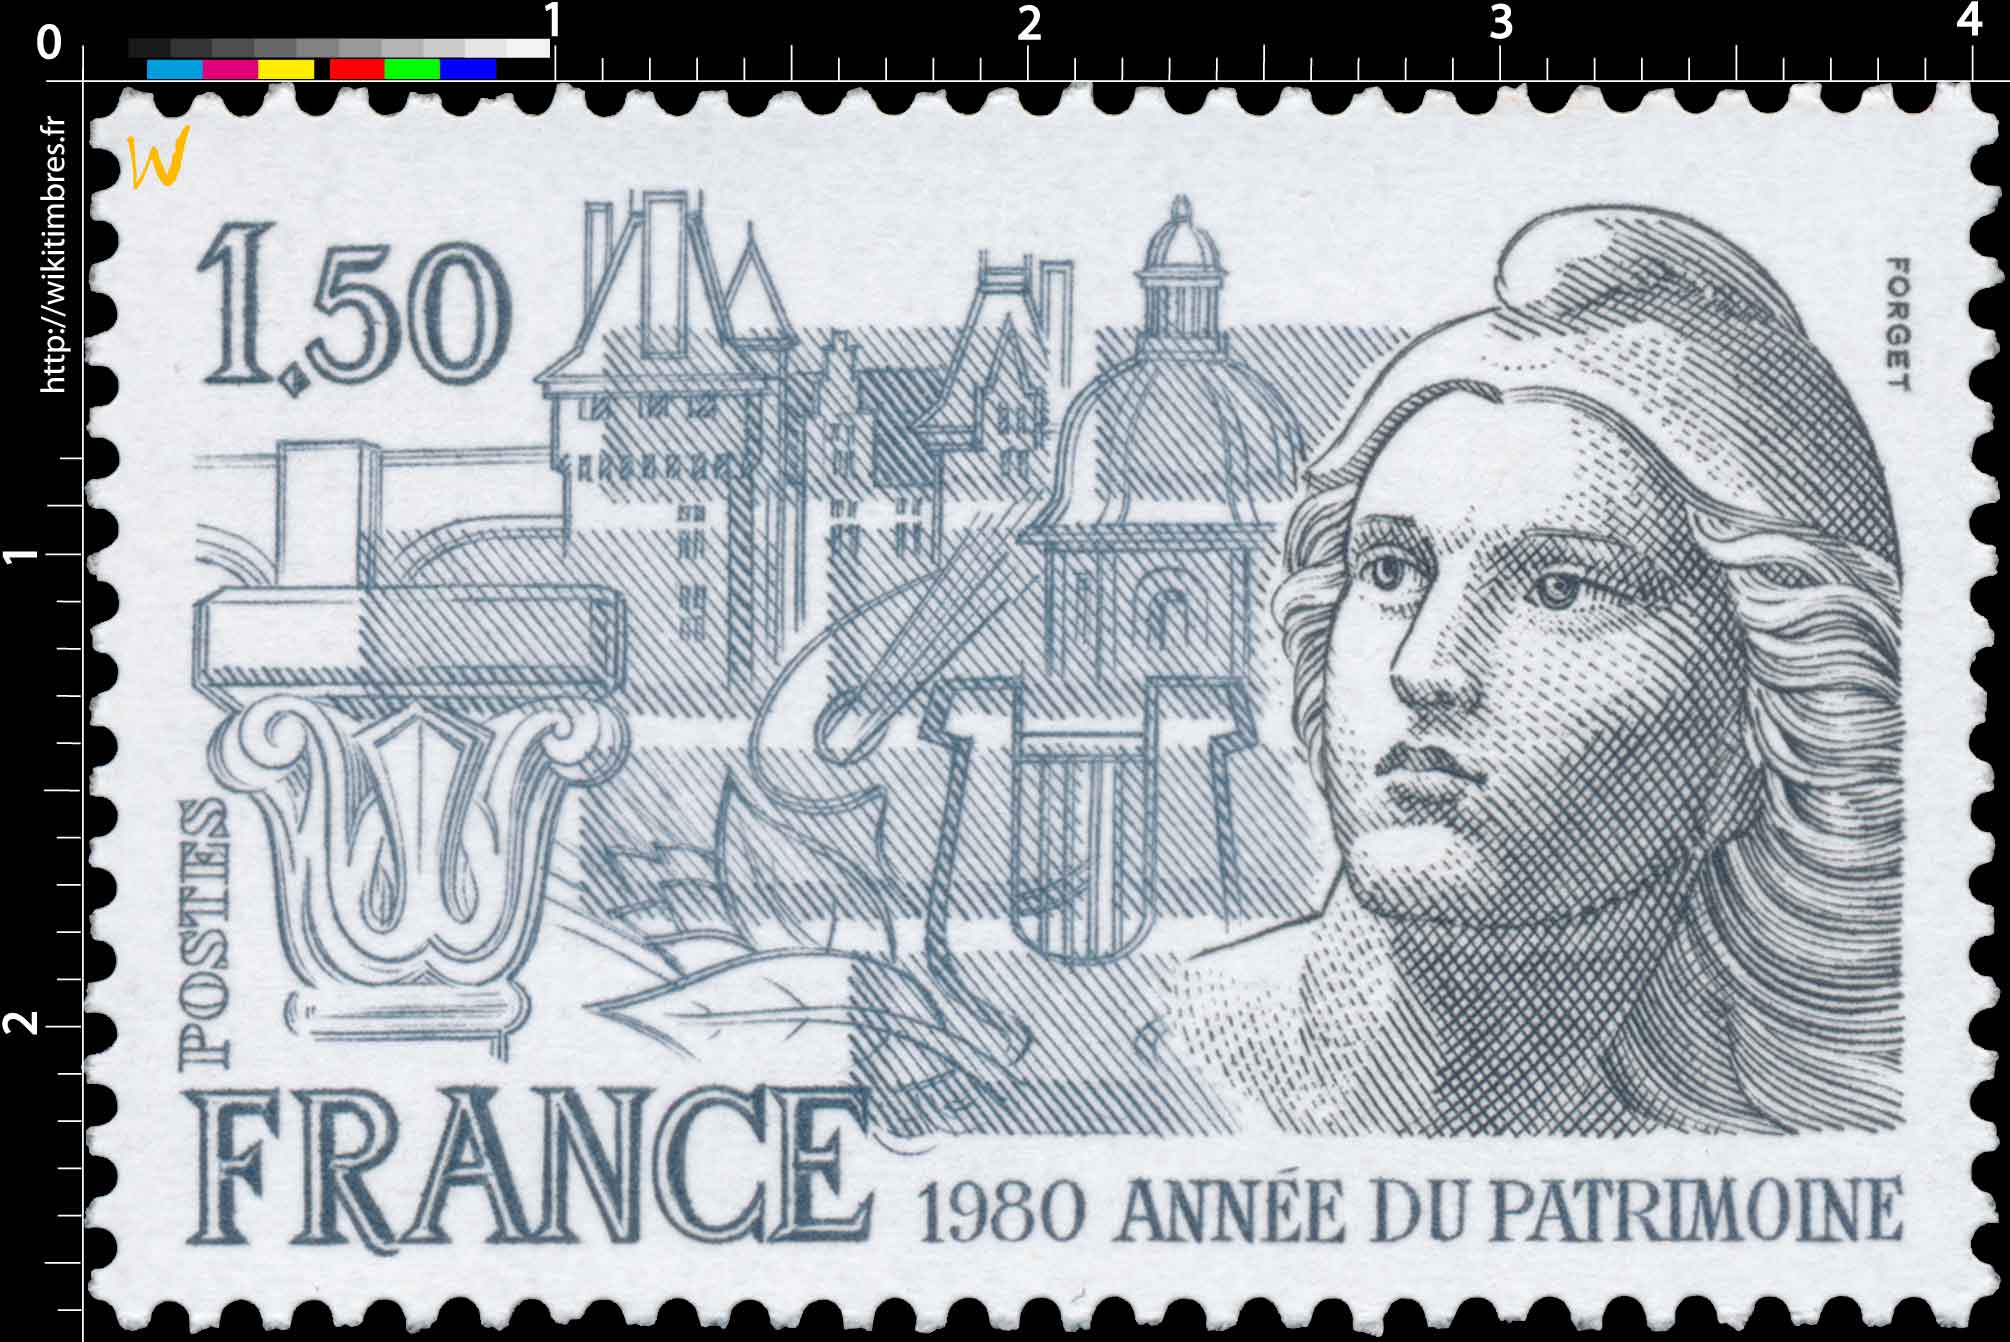 1980 ANNÉE DU PATRIMOINE